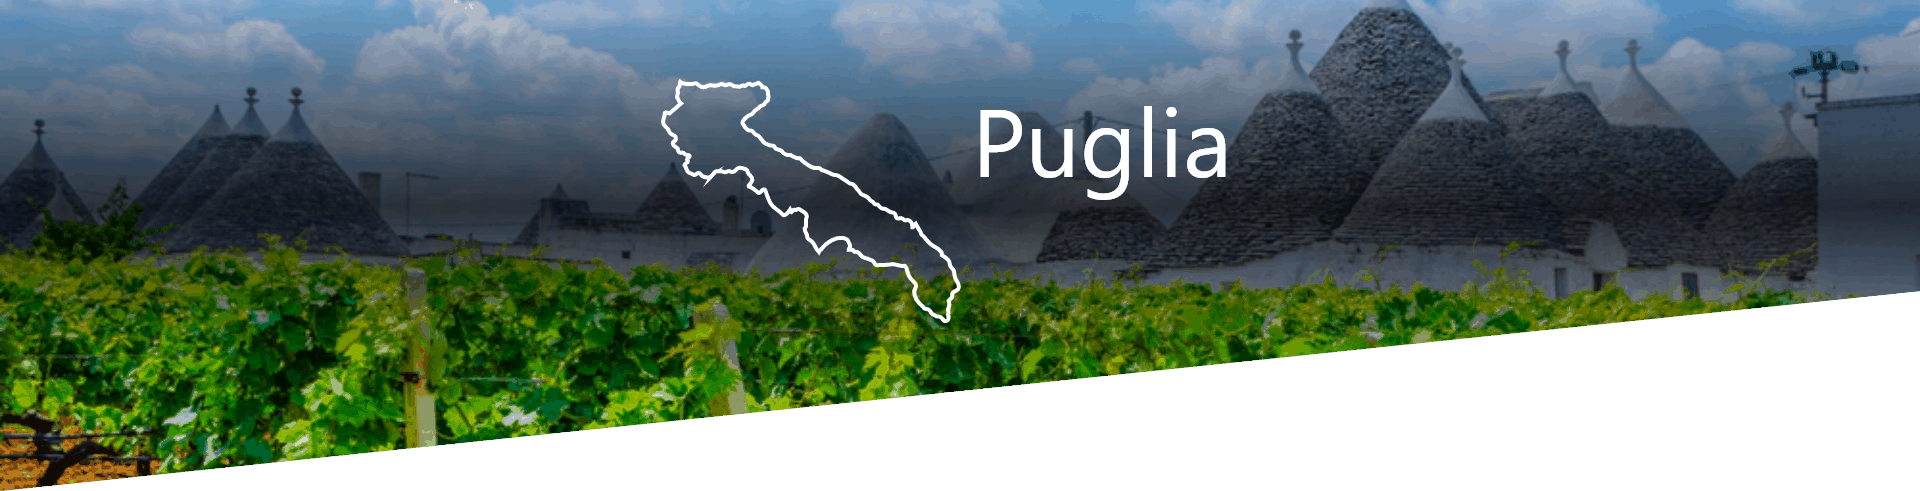 Selezione Vini e Cantine in Puglia